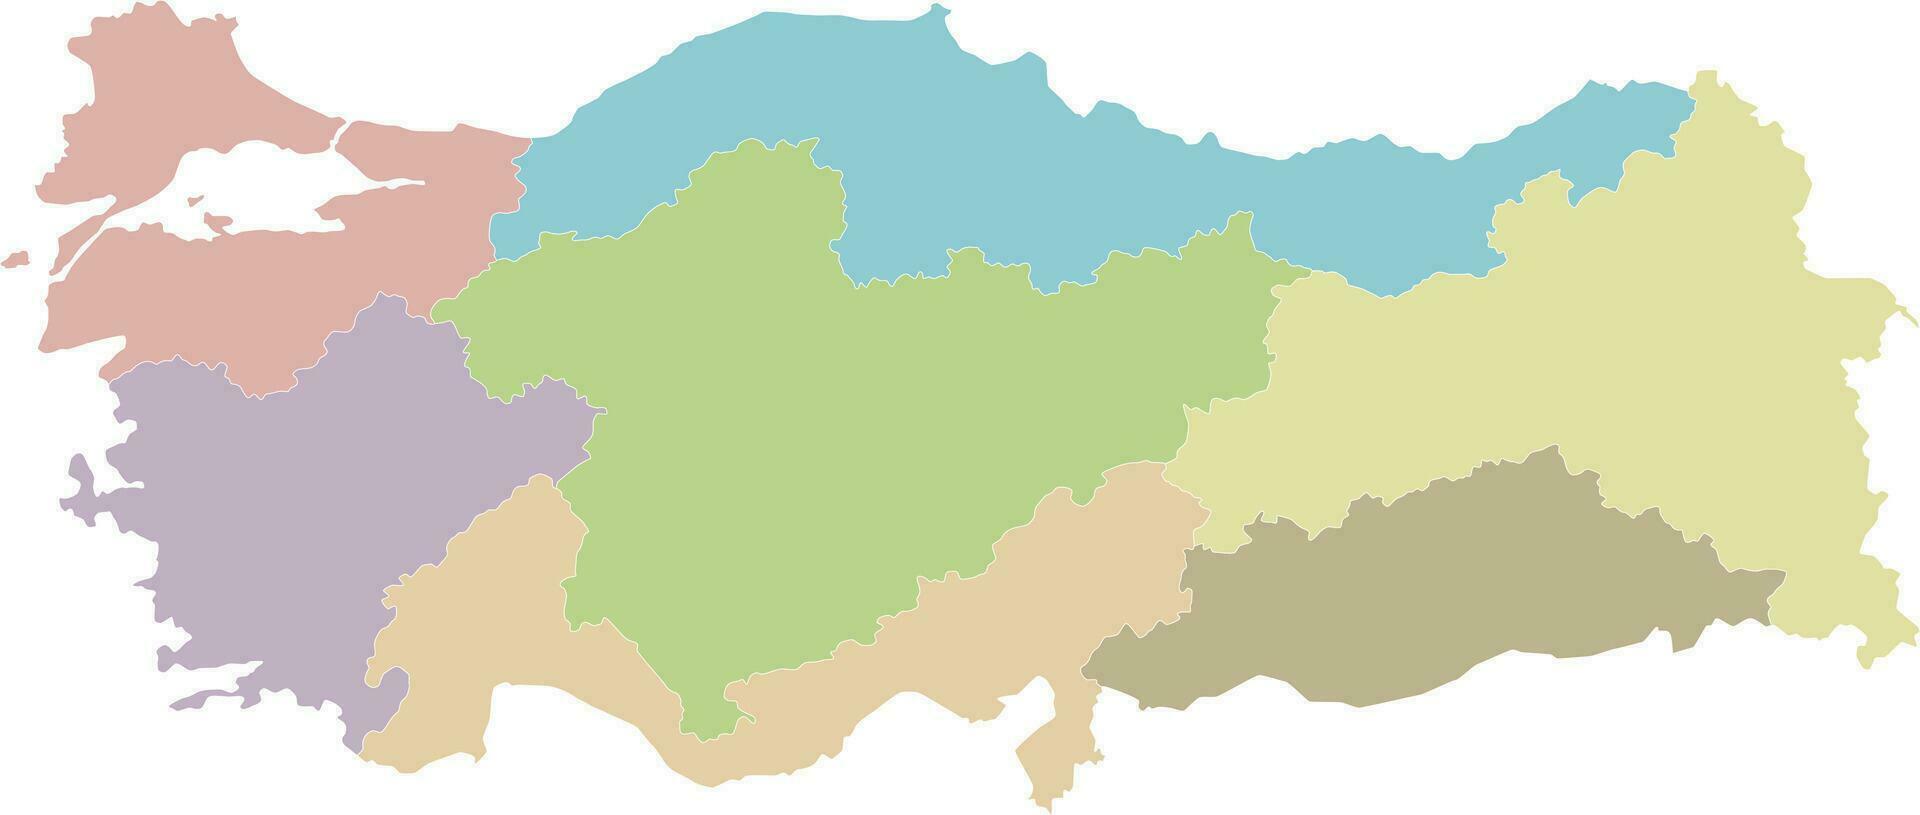 Vektor leer Karte von Truthahn mit Regionen und geografisch Abteilungen. editierbar und deutlich beschriftet Lagen.